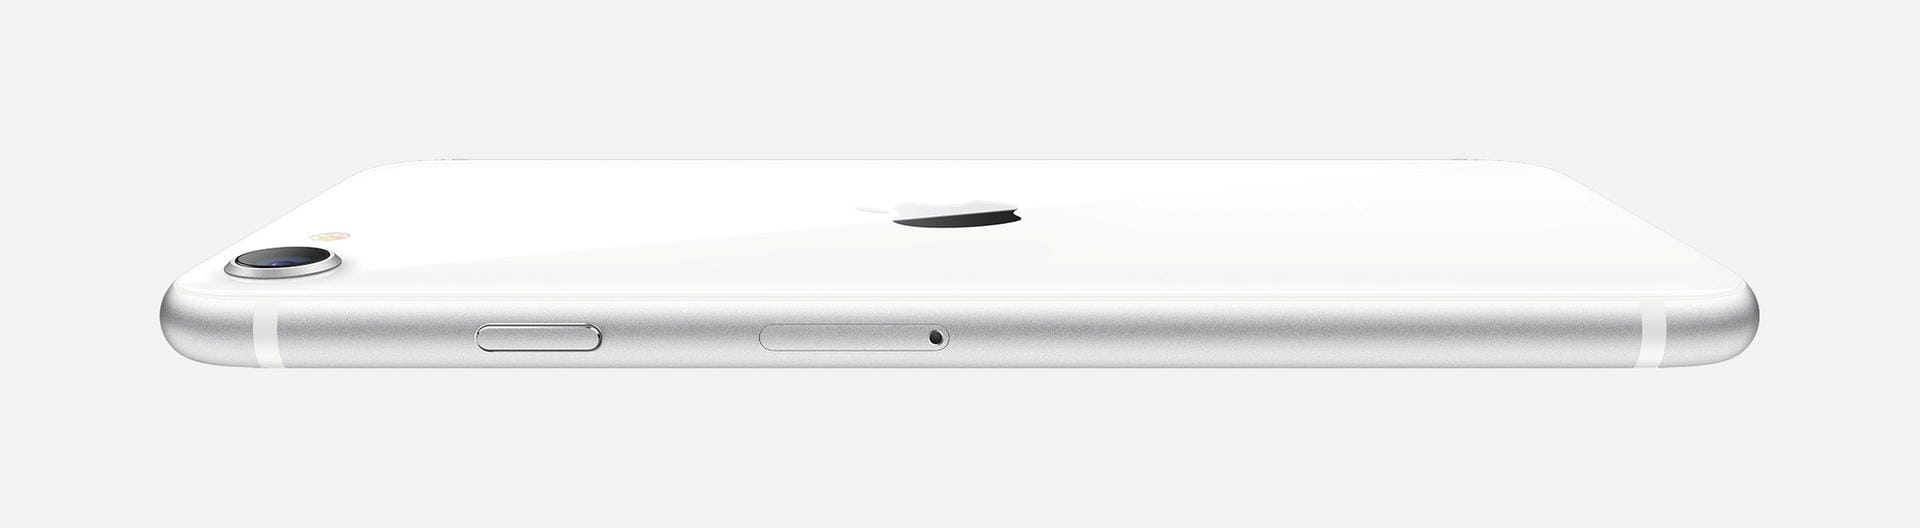 Im Gegensatz zu den jüngsten Spitzenmodellen setzt Apple beim neu aufgelegten iPhone SE nicht auf das Entsperren des Geräts durch Gesichtserkennung (FaceID), sondern auf einen Fingerabdrucksensor (TouchID).